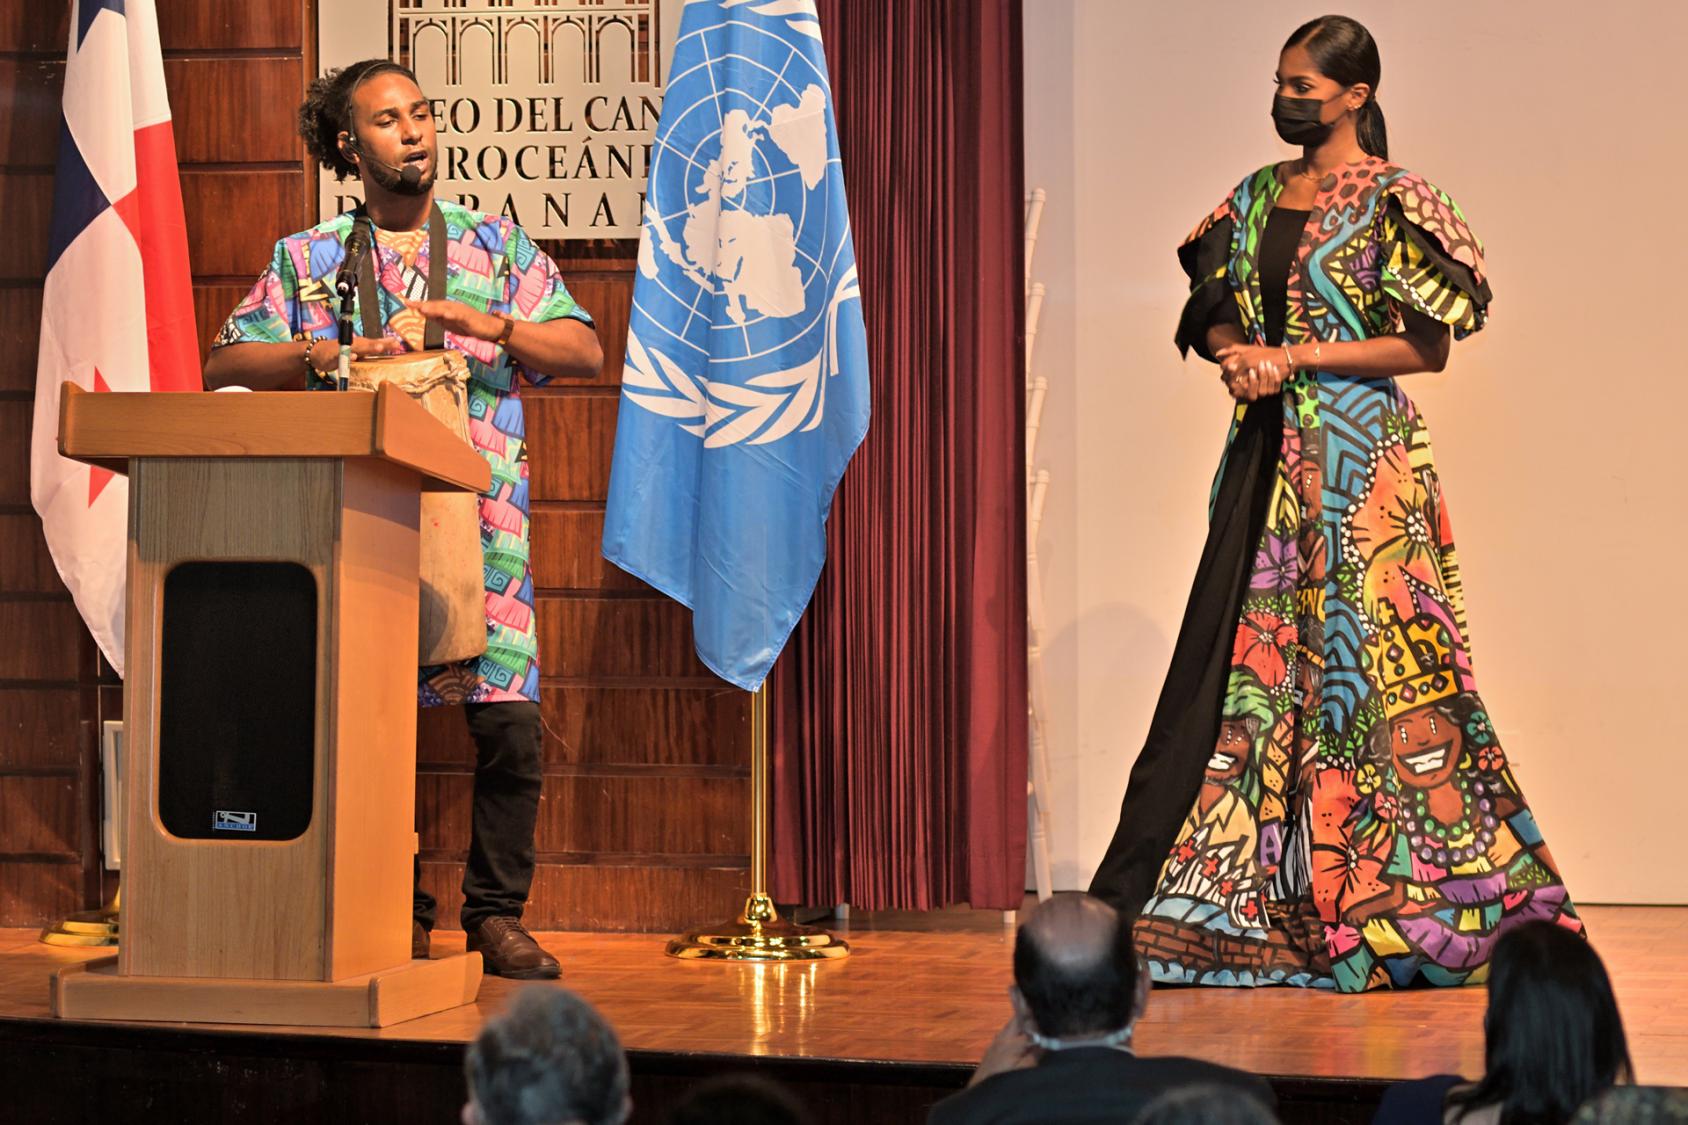 يقف رجل وامرأة يرتديان ملابس ملونة على المسرح، ويتحدث الرجل أمام ميكروفون.